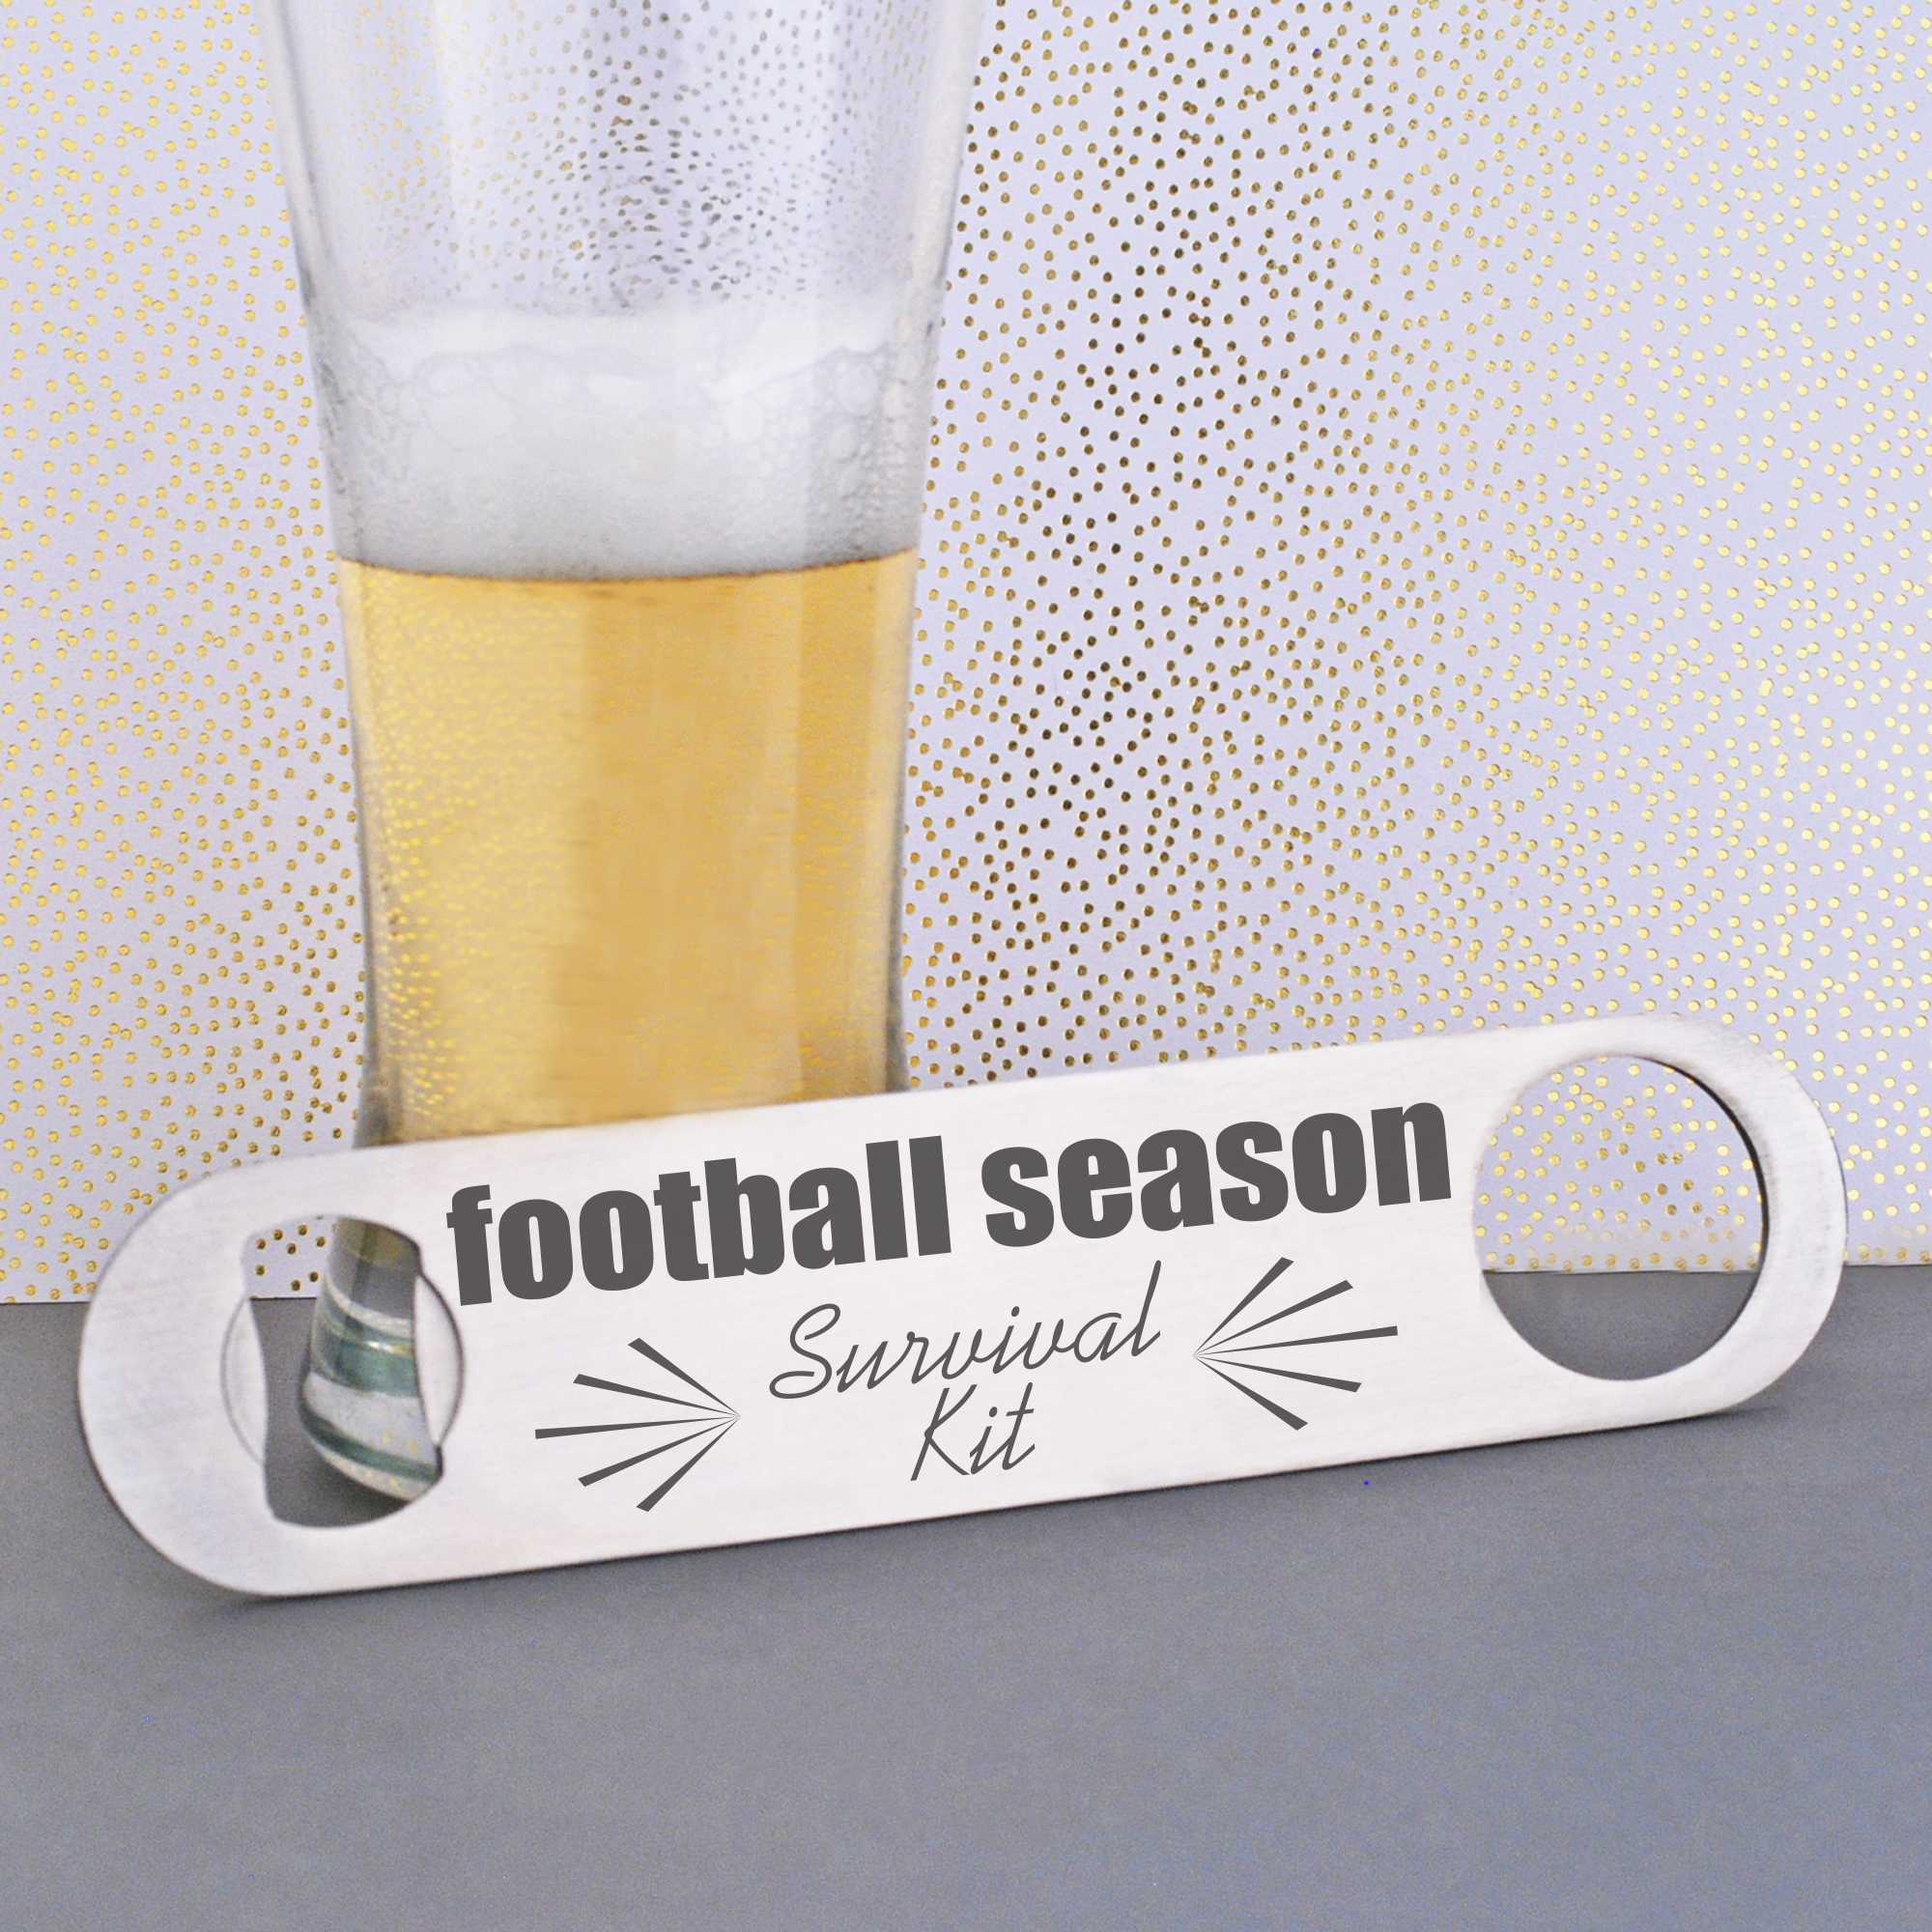 Laser Engraved Bottle Opener for the Football Season - Love, Georgie